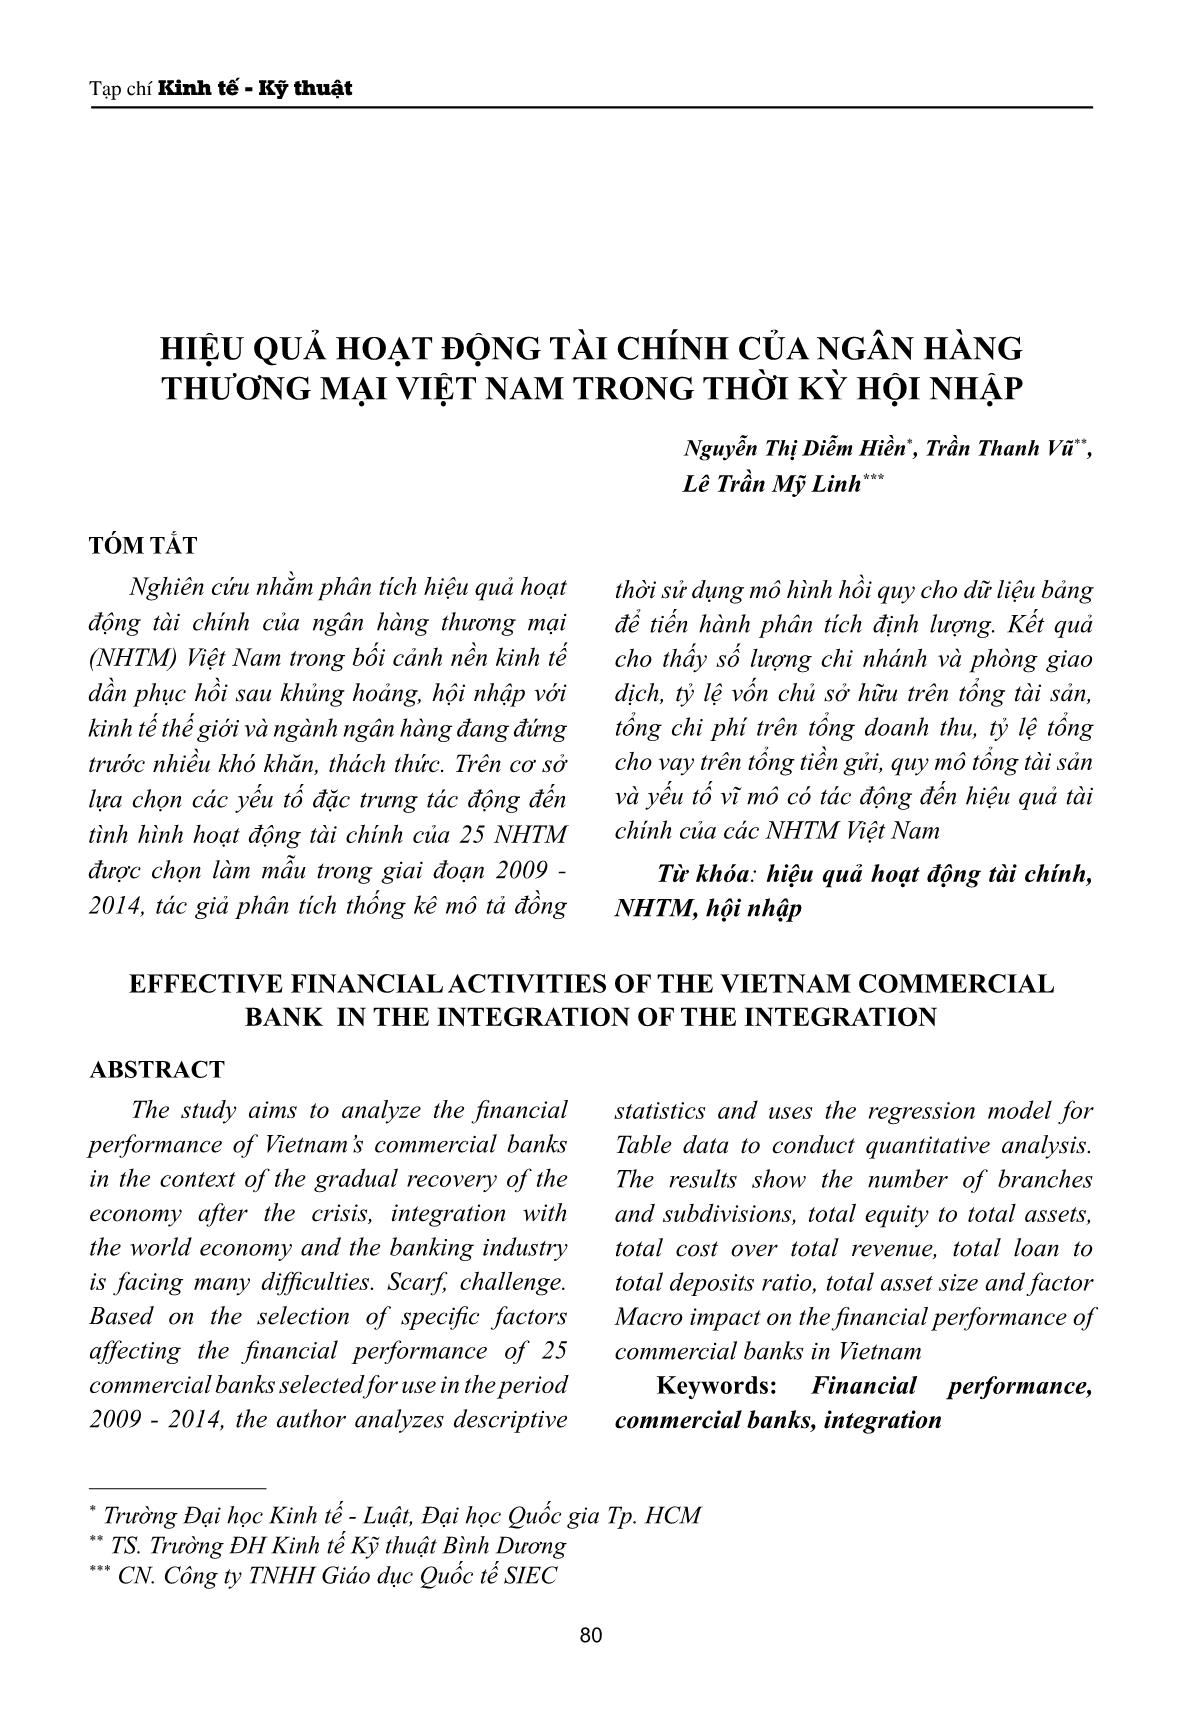 Hiệu quả hoạt động tài chính của ngân hàng thương mại Việt Nam trong thời kỳ hội nhập trang 1